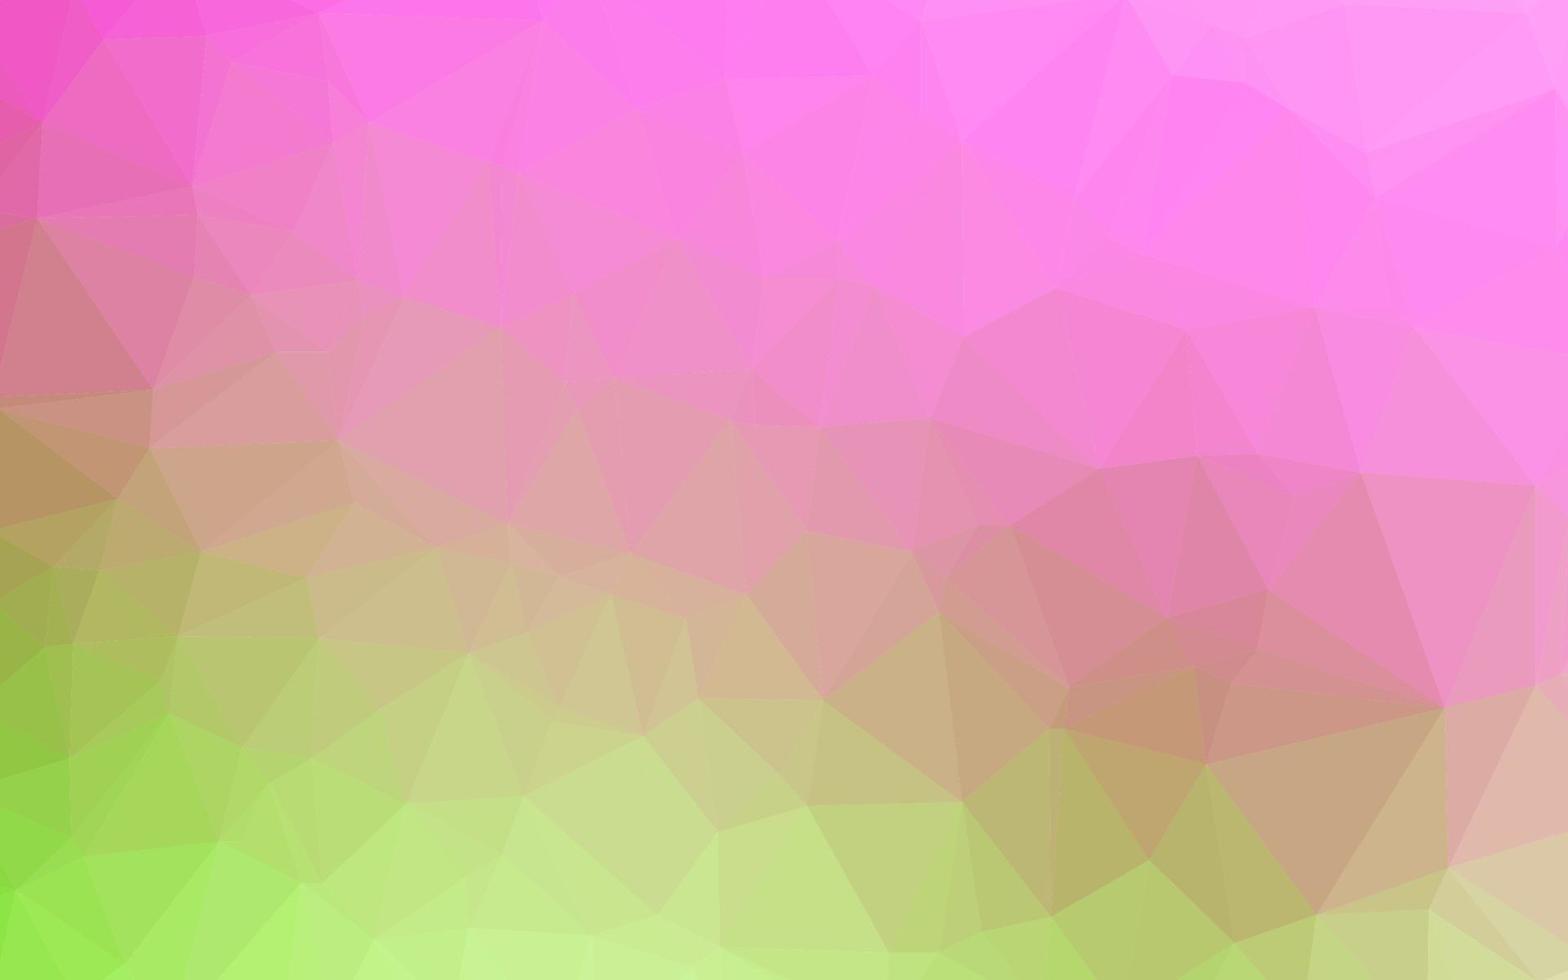 diseño poligonal abstracto vector rosa claro, verde.